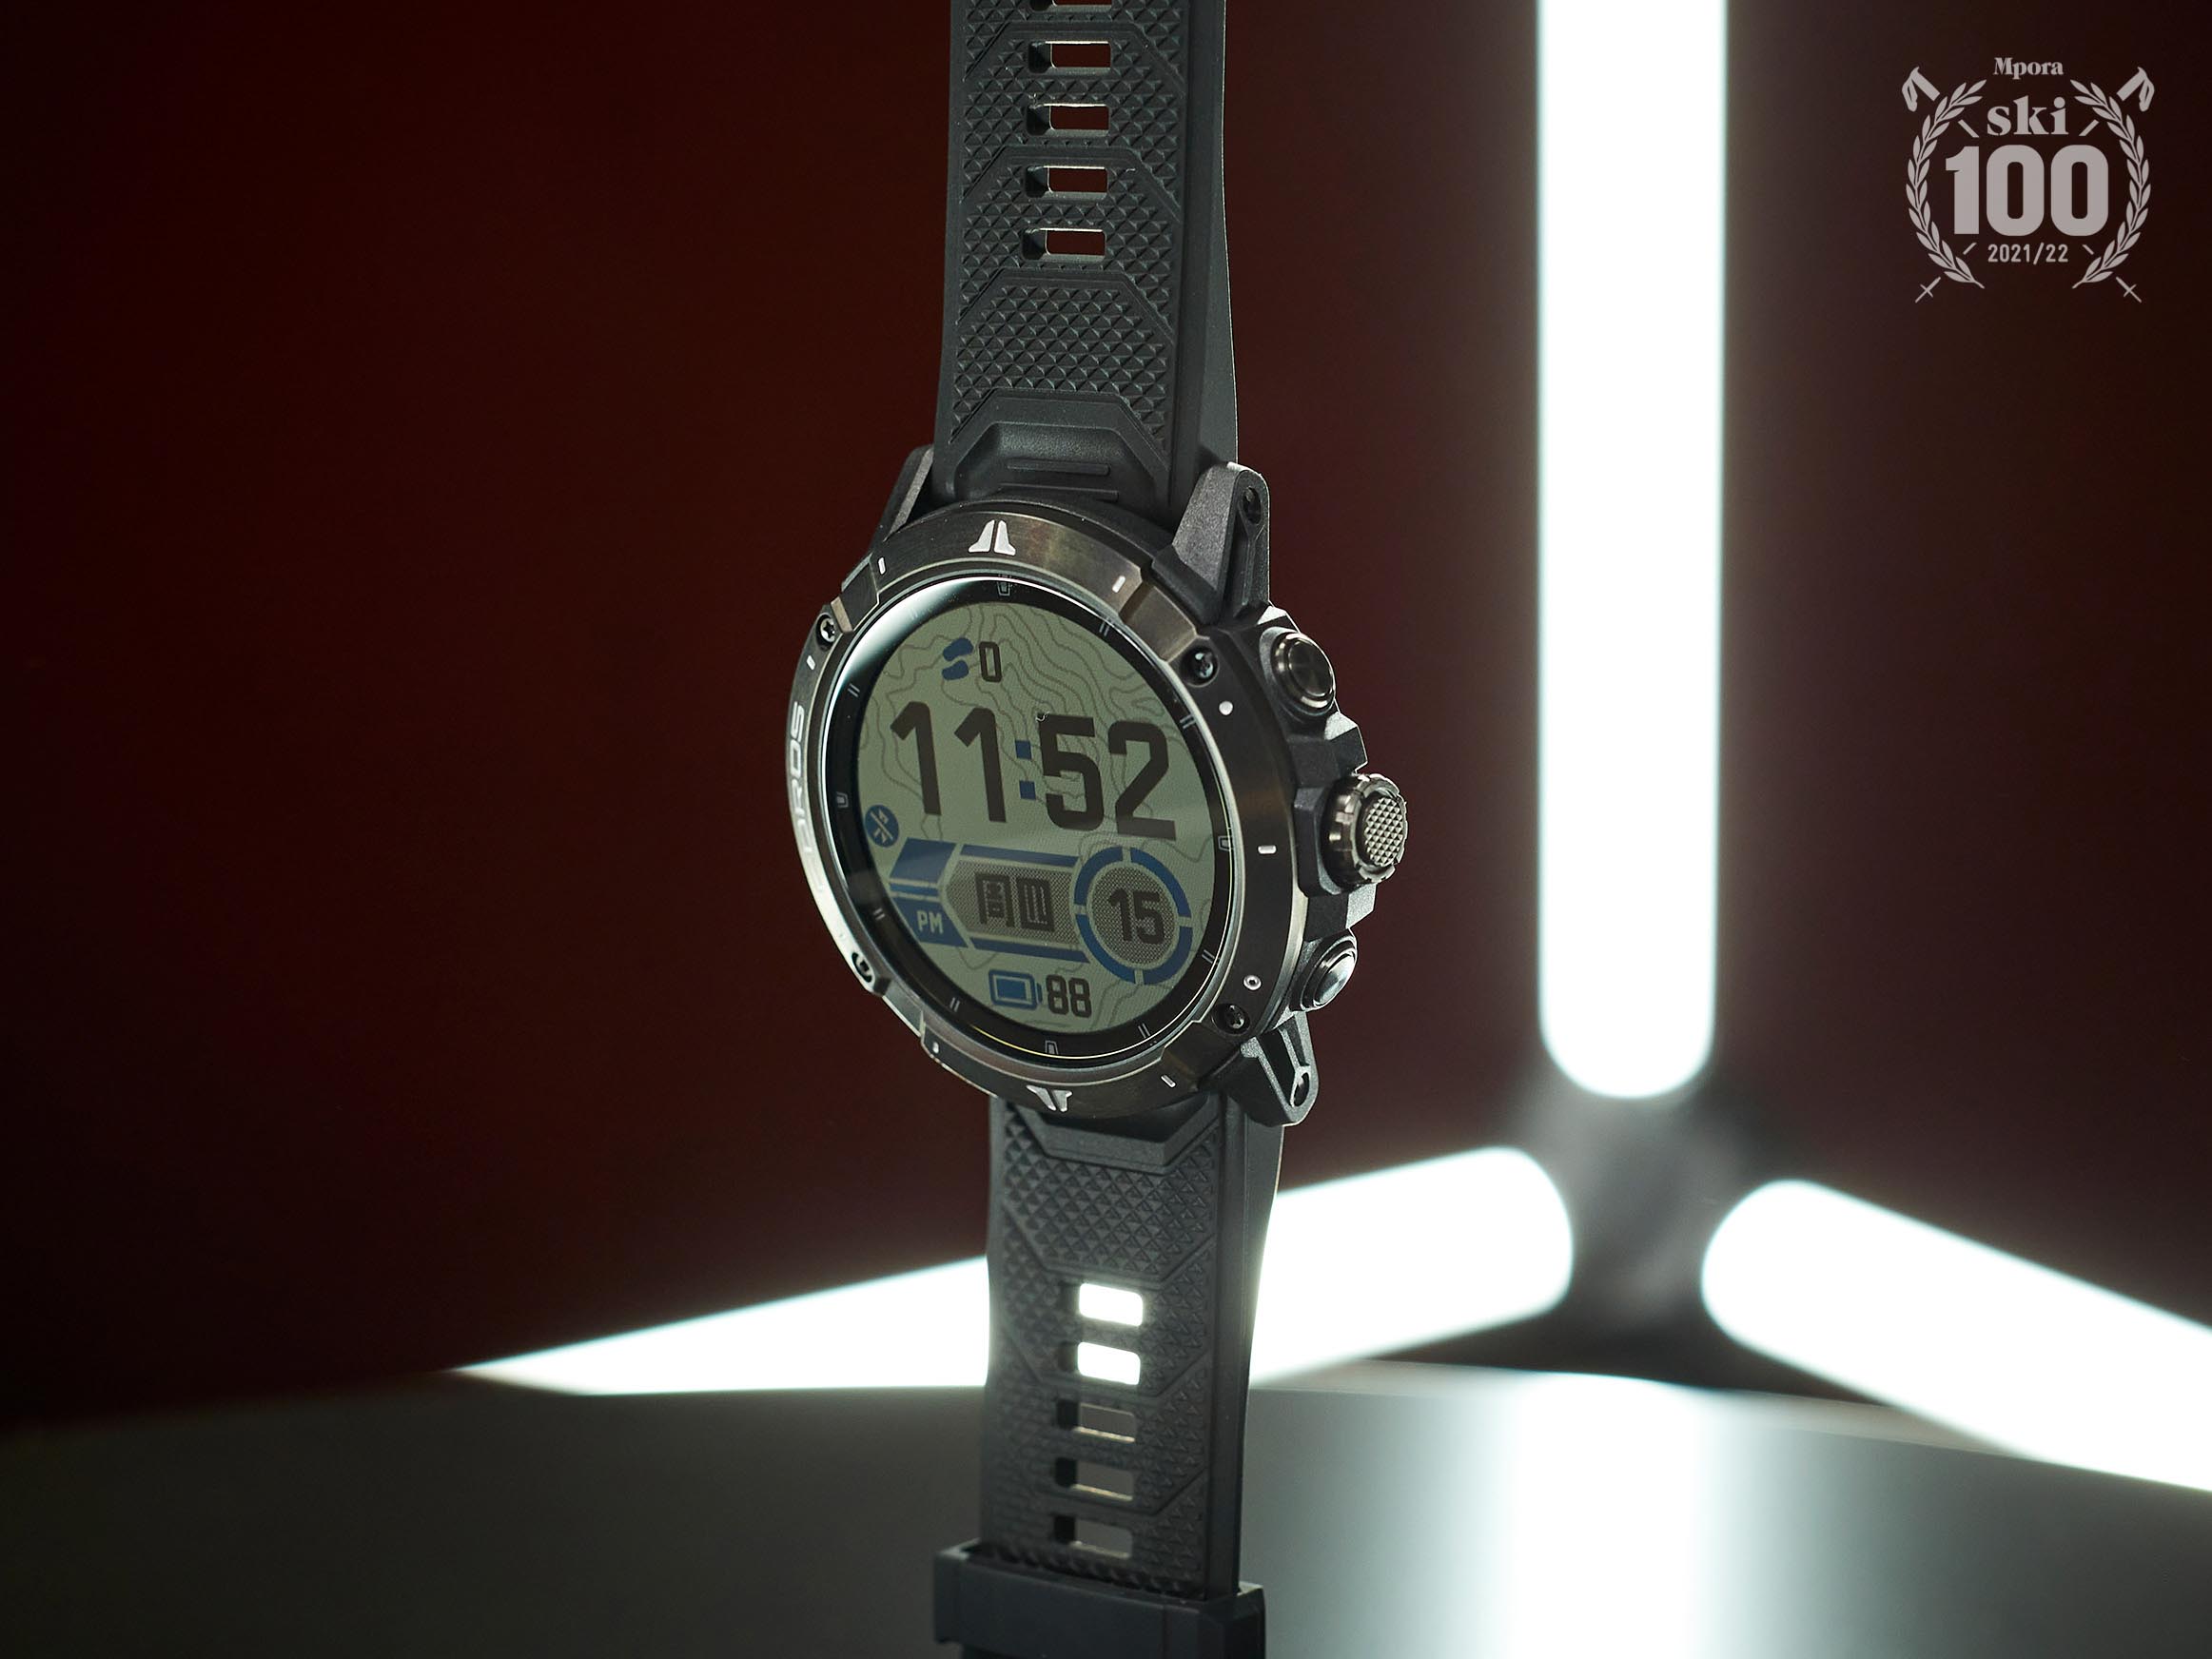 Coros-vertix-2-smartwatch-review-3